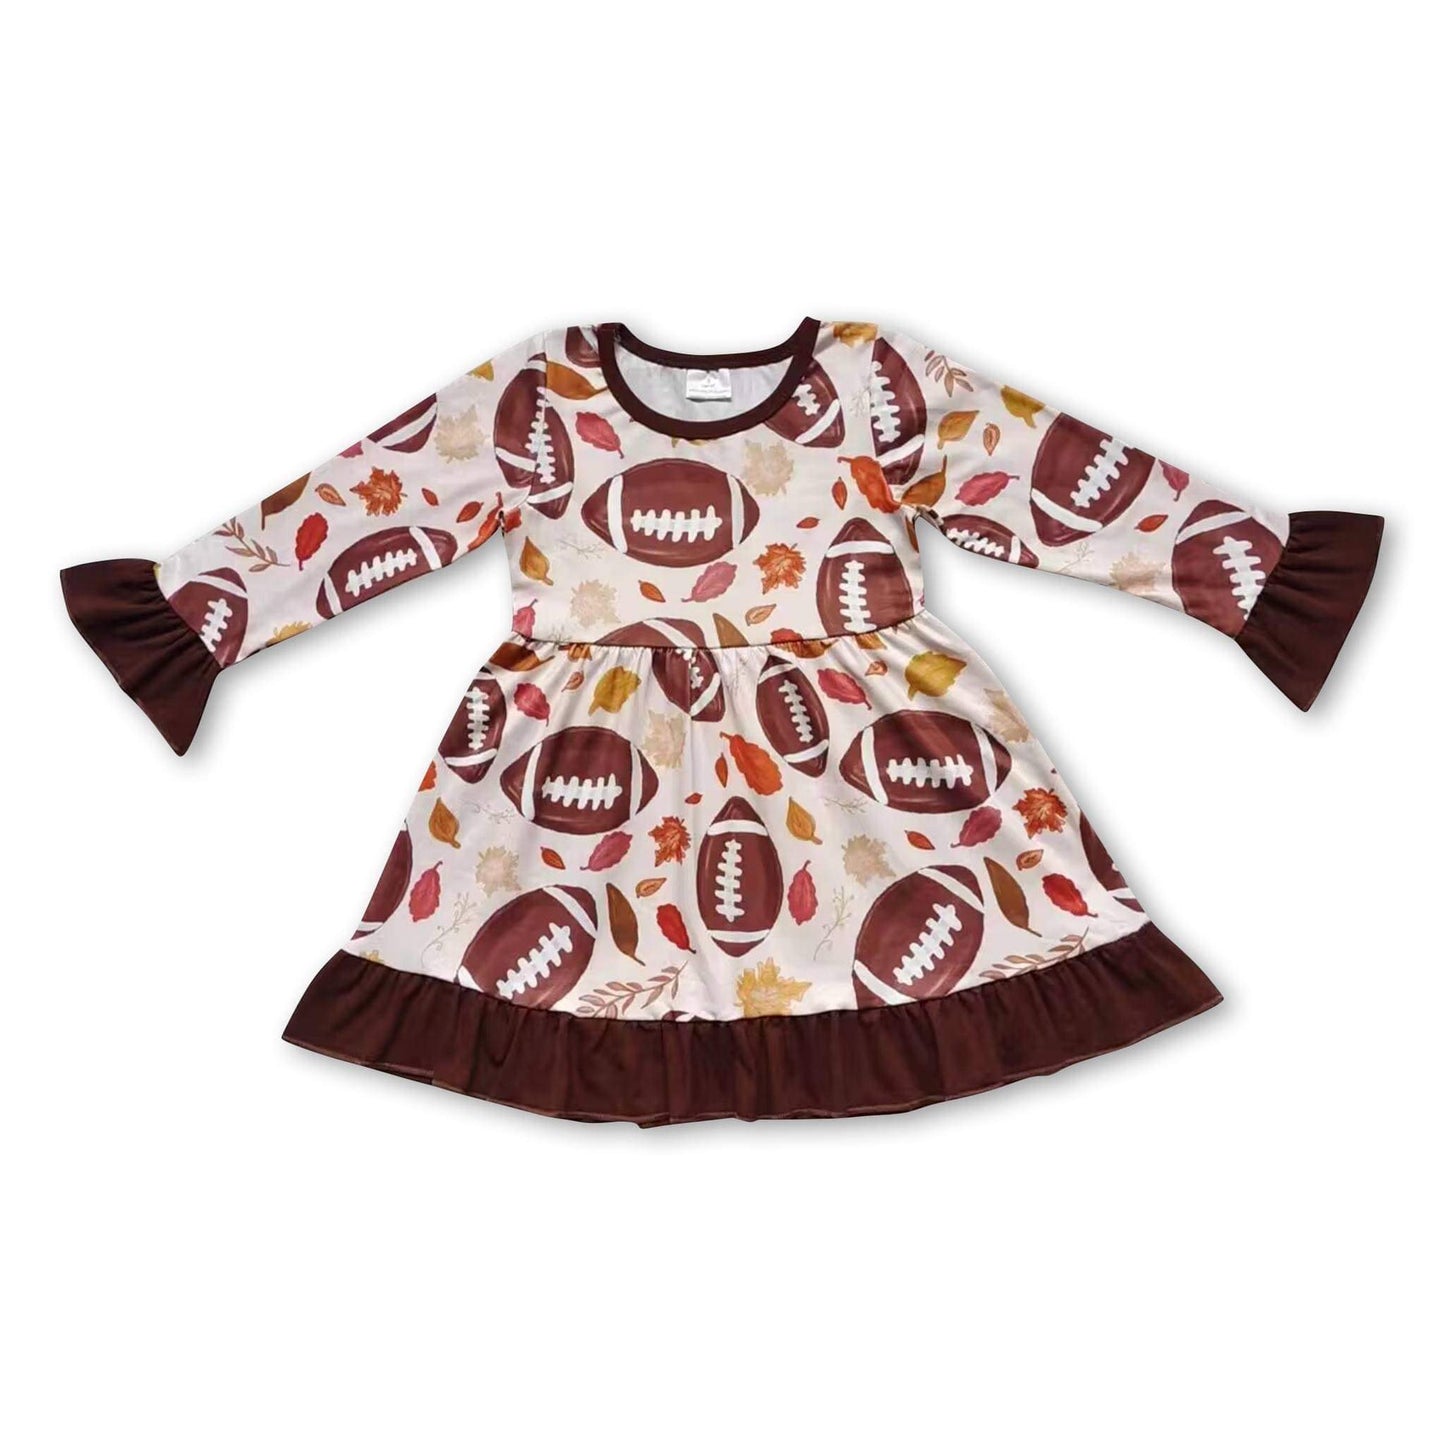 ᴡᴇᴇᴋʟʏ ᴘʀᴇ ᴏʀᴅᴇʀ Fall Football Dress